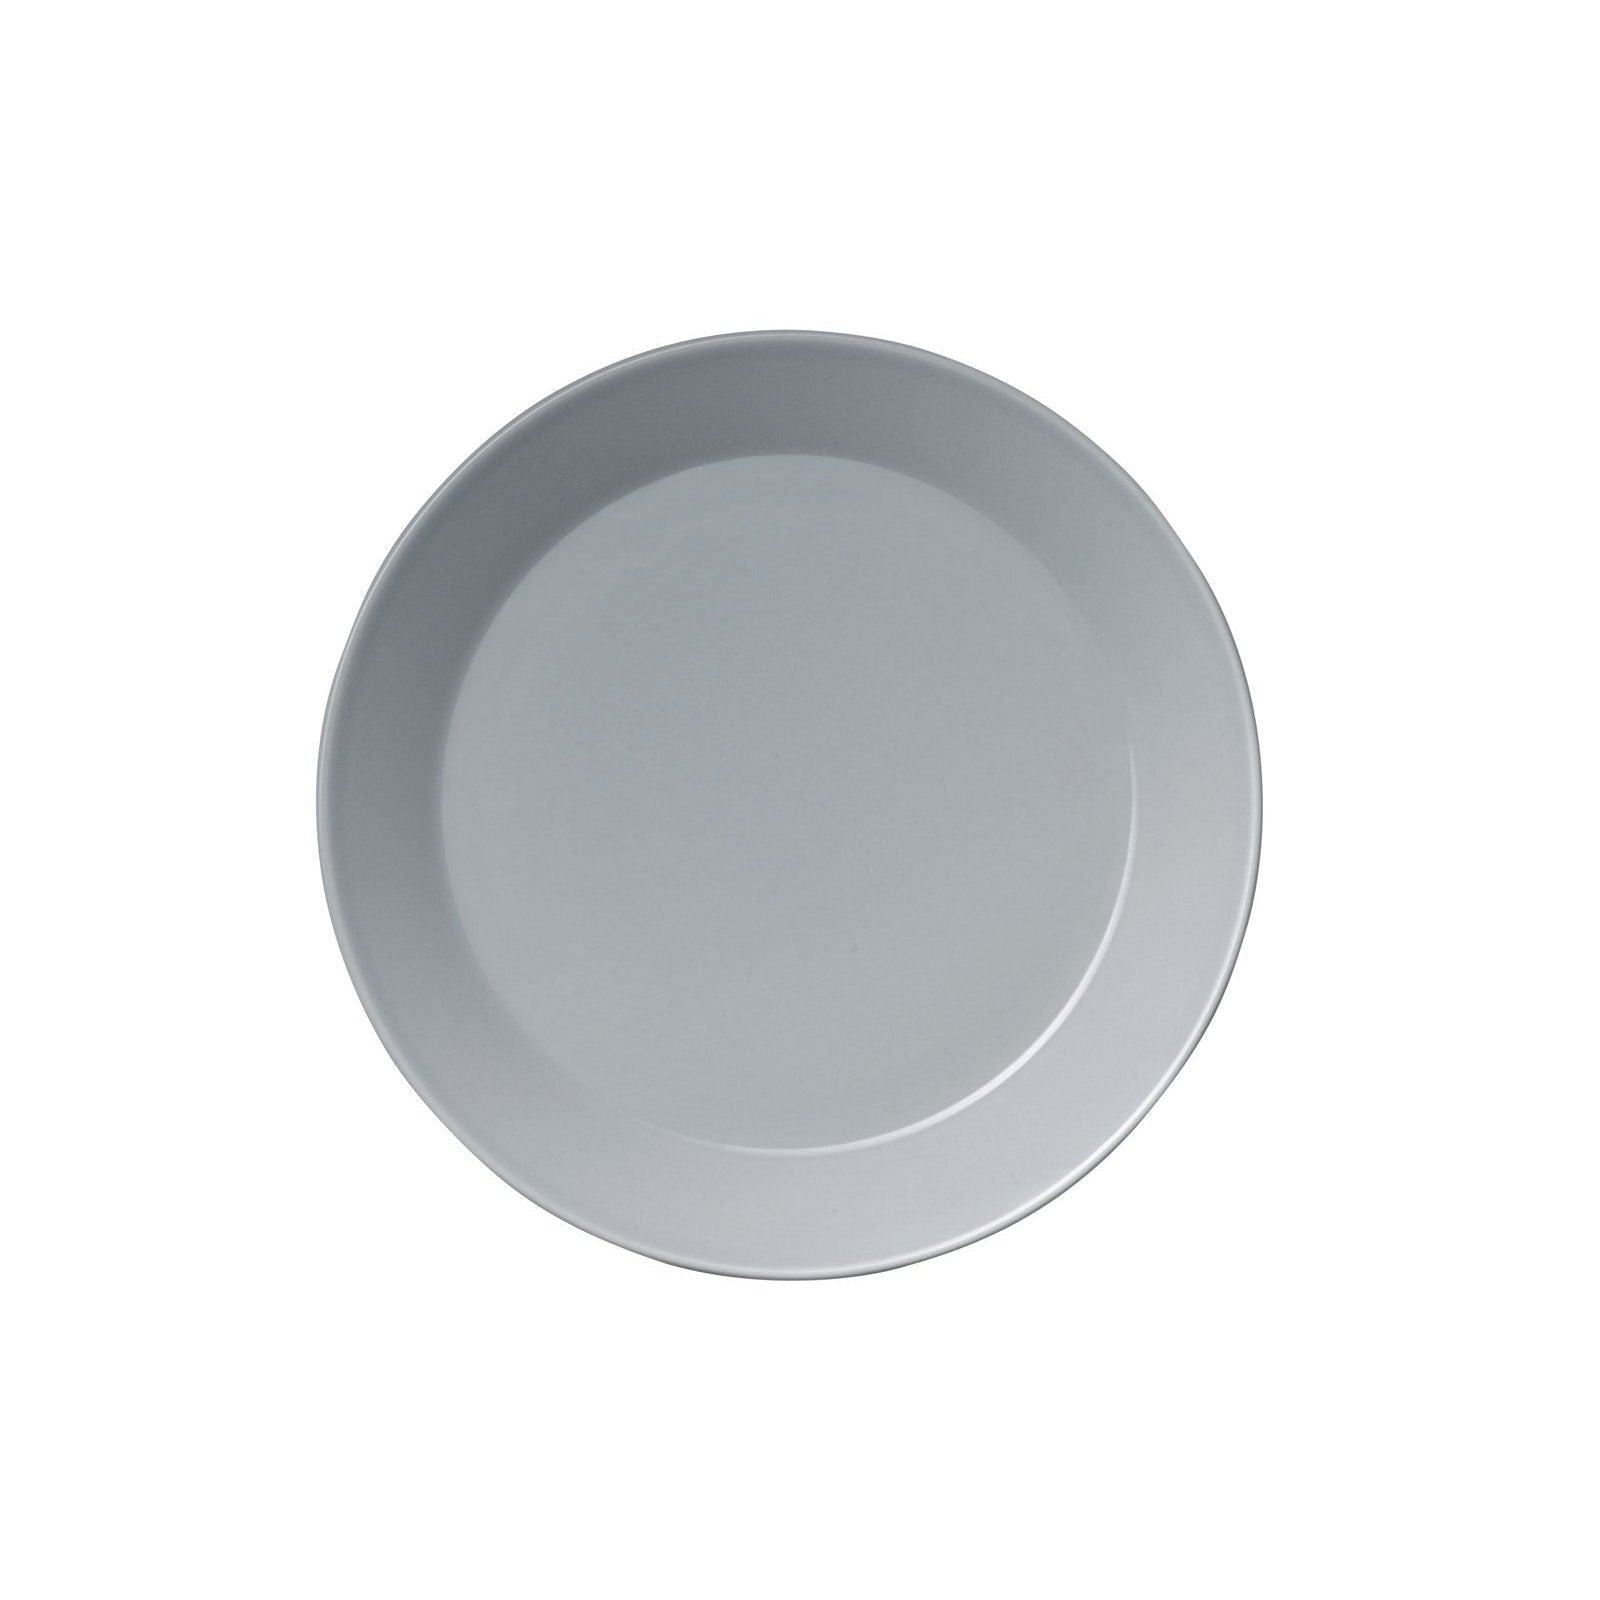 Iittala Teema Plate Flat Pearl Grey, 26 Cm